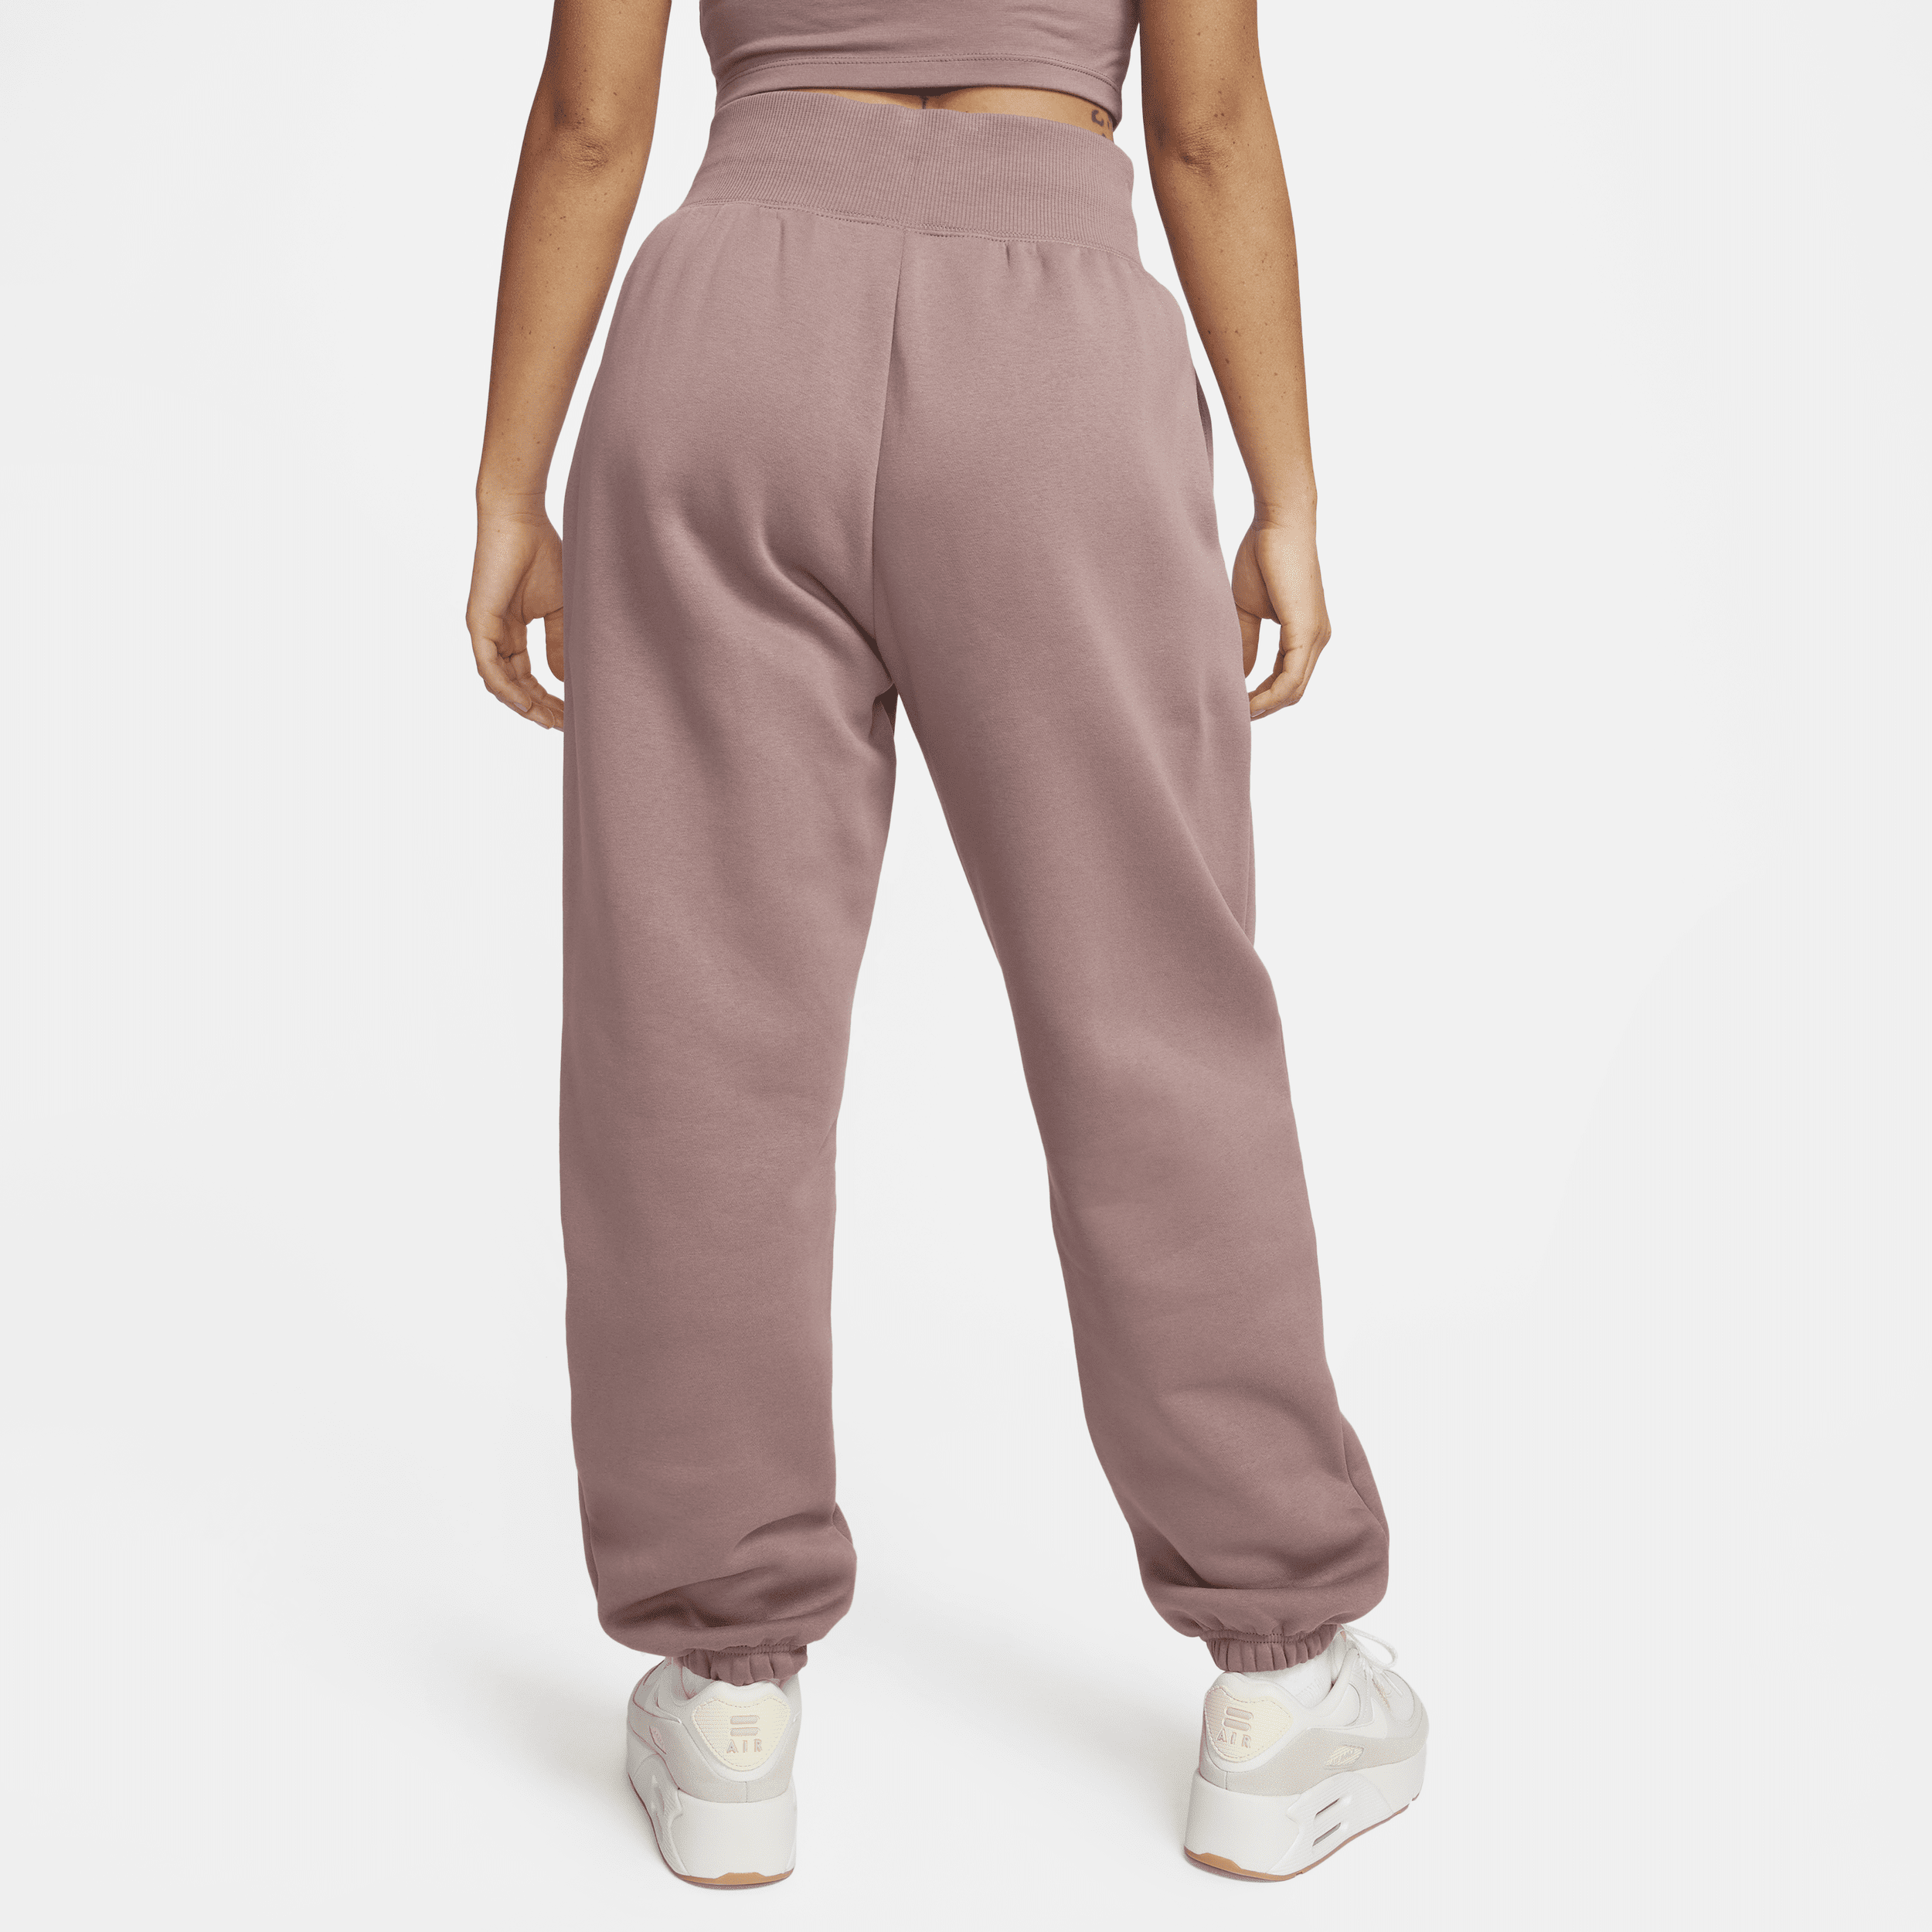 Nike Sportswear Phoenix Fleece Oversized joggingbroek met hoge taille voor dames Paars